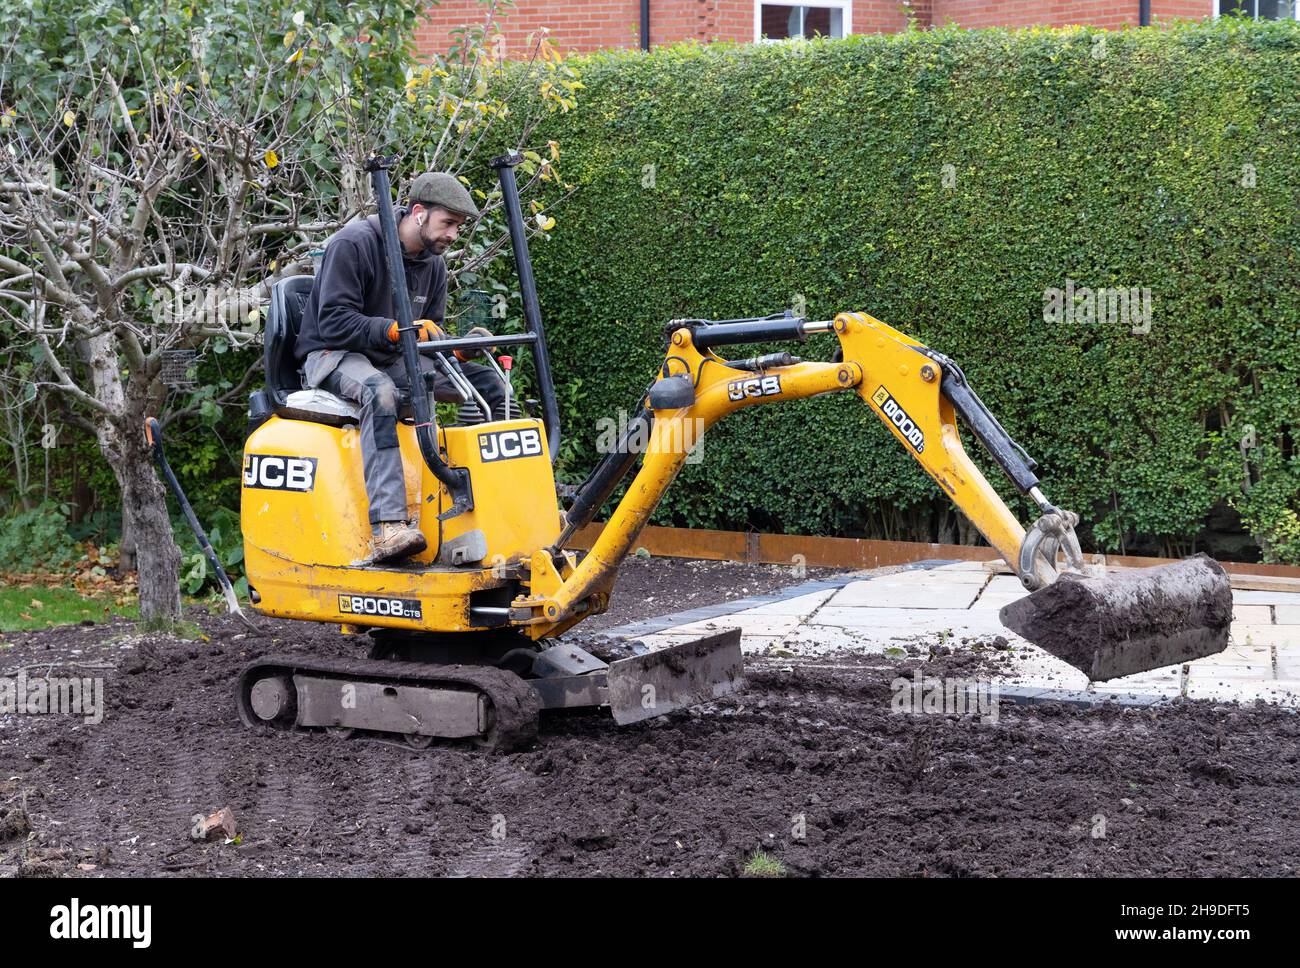 Mano de obra especializada Reino Unido; jardinero paisajista Reino Unido - un hombre que opera un mini digger en un jardín doméstico, Suffolk Reino Unido Foto de stock